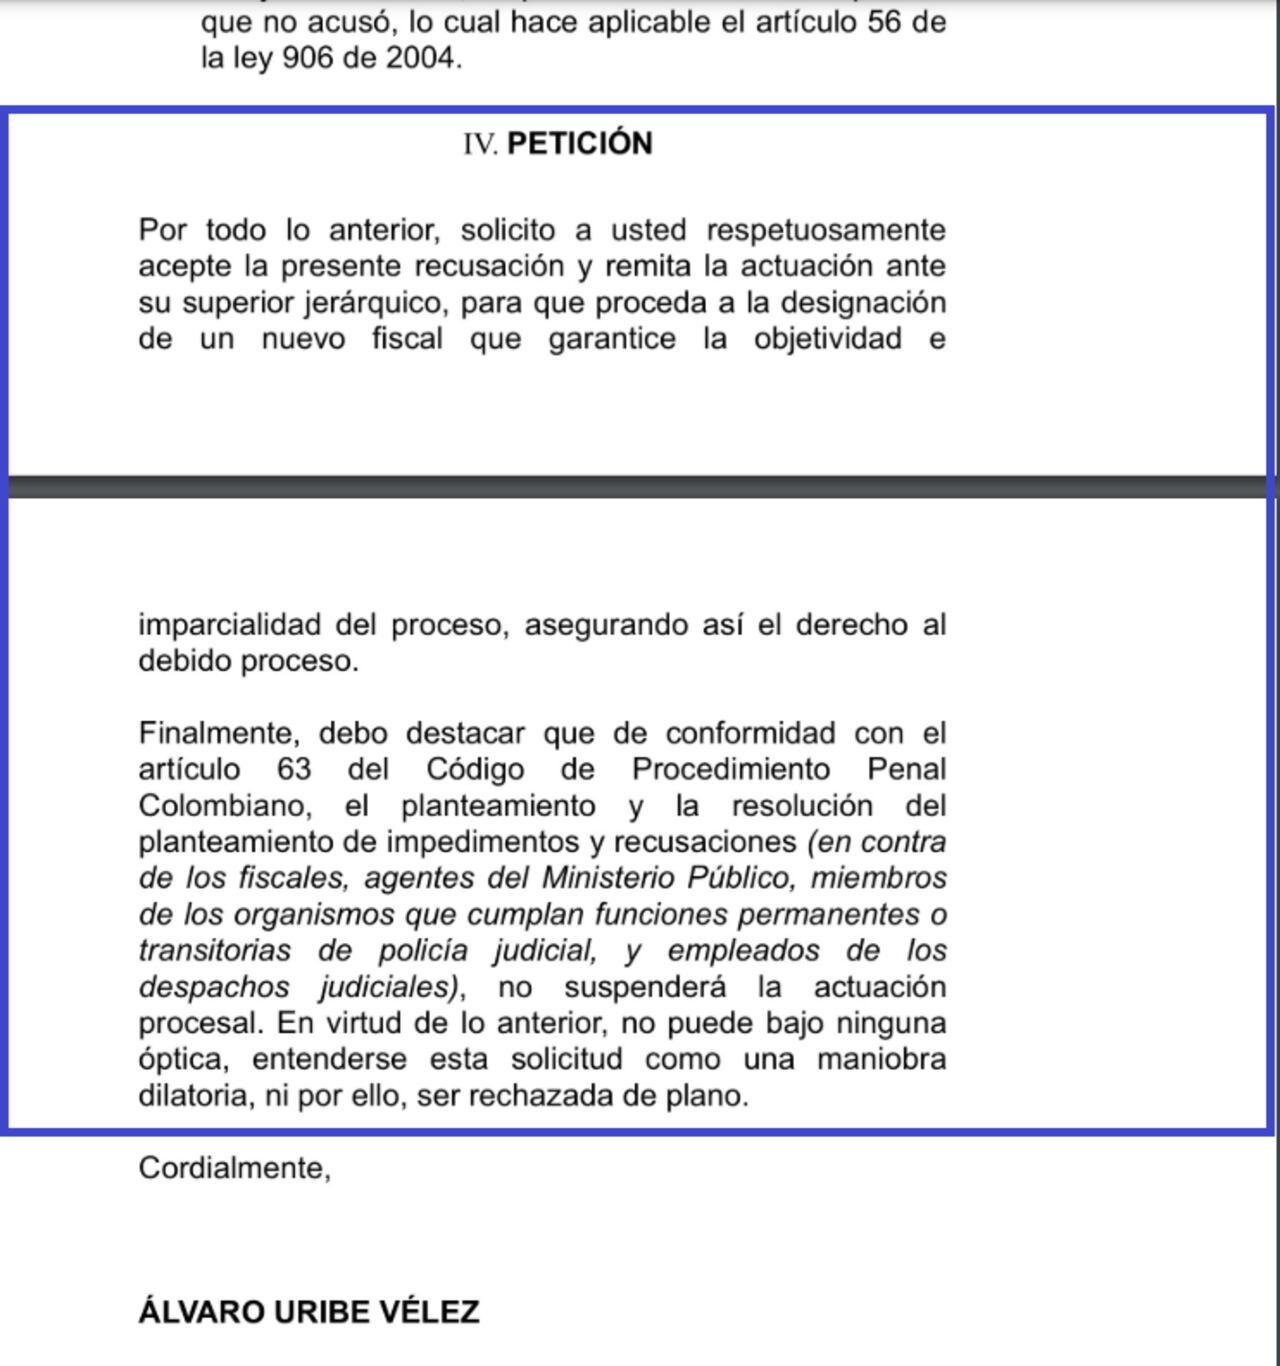 El expresidente Álvaro Uribe Vélez recusó al fiscal primero delegado ante la Corte Suprema que lo acusó por los delitos de soborno, soborno en actuación penal y fraude procesal.